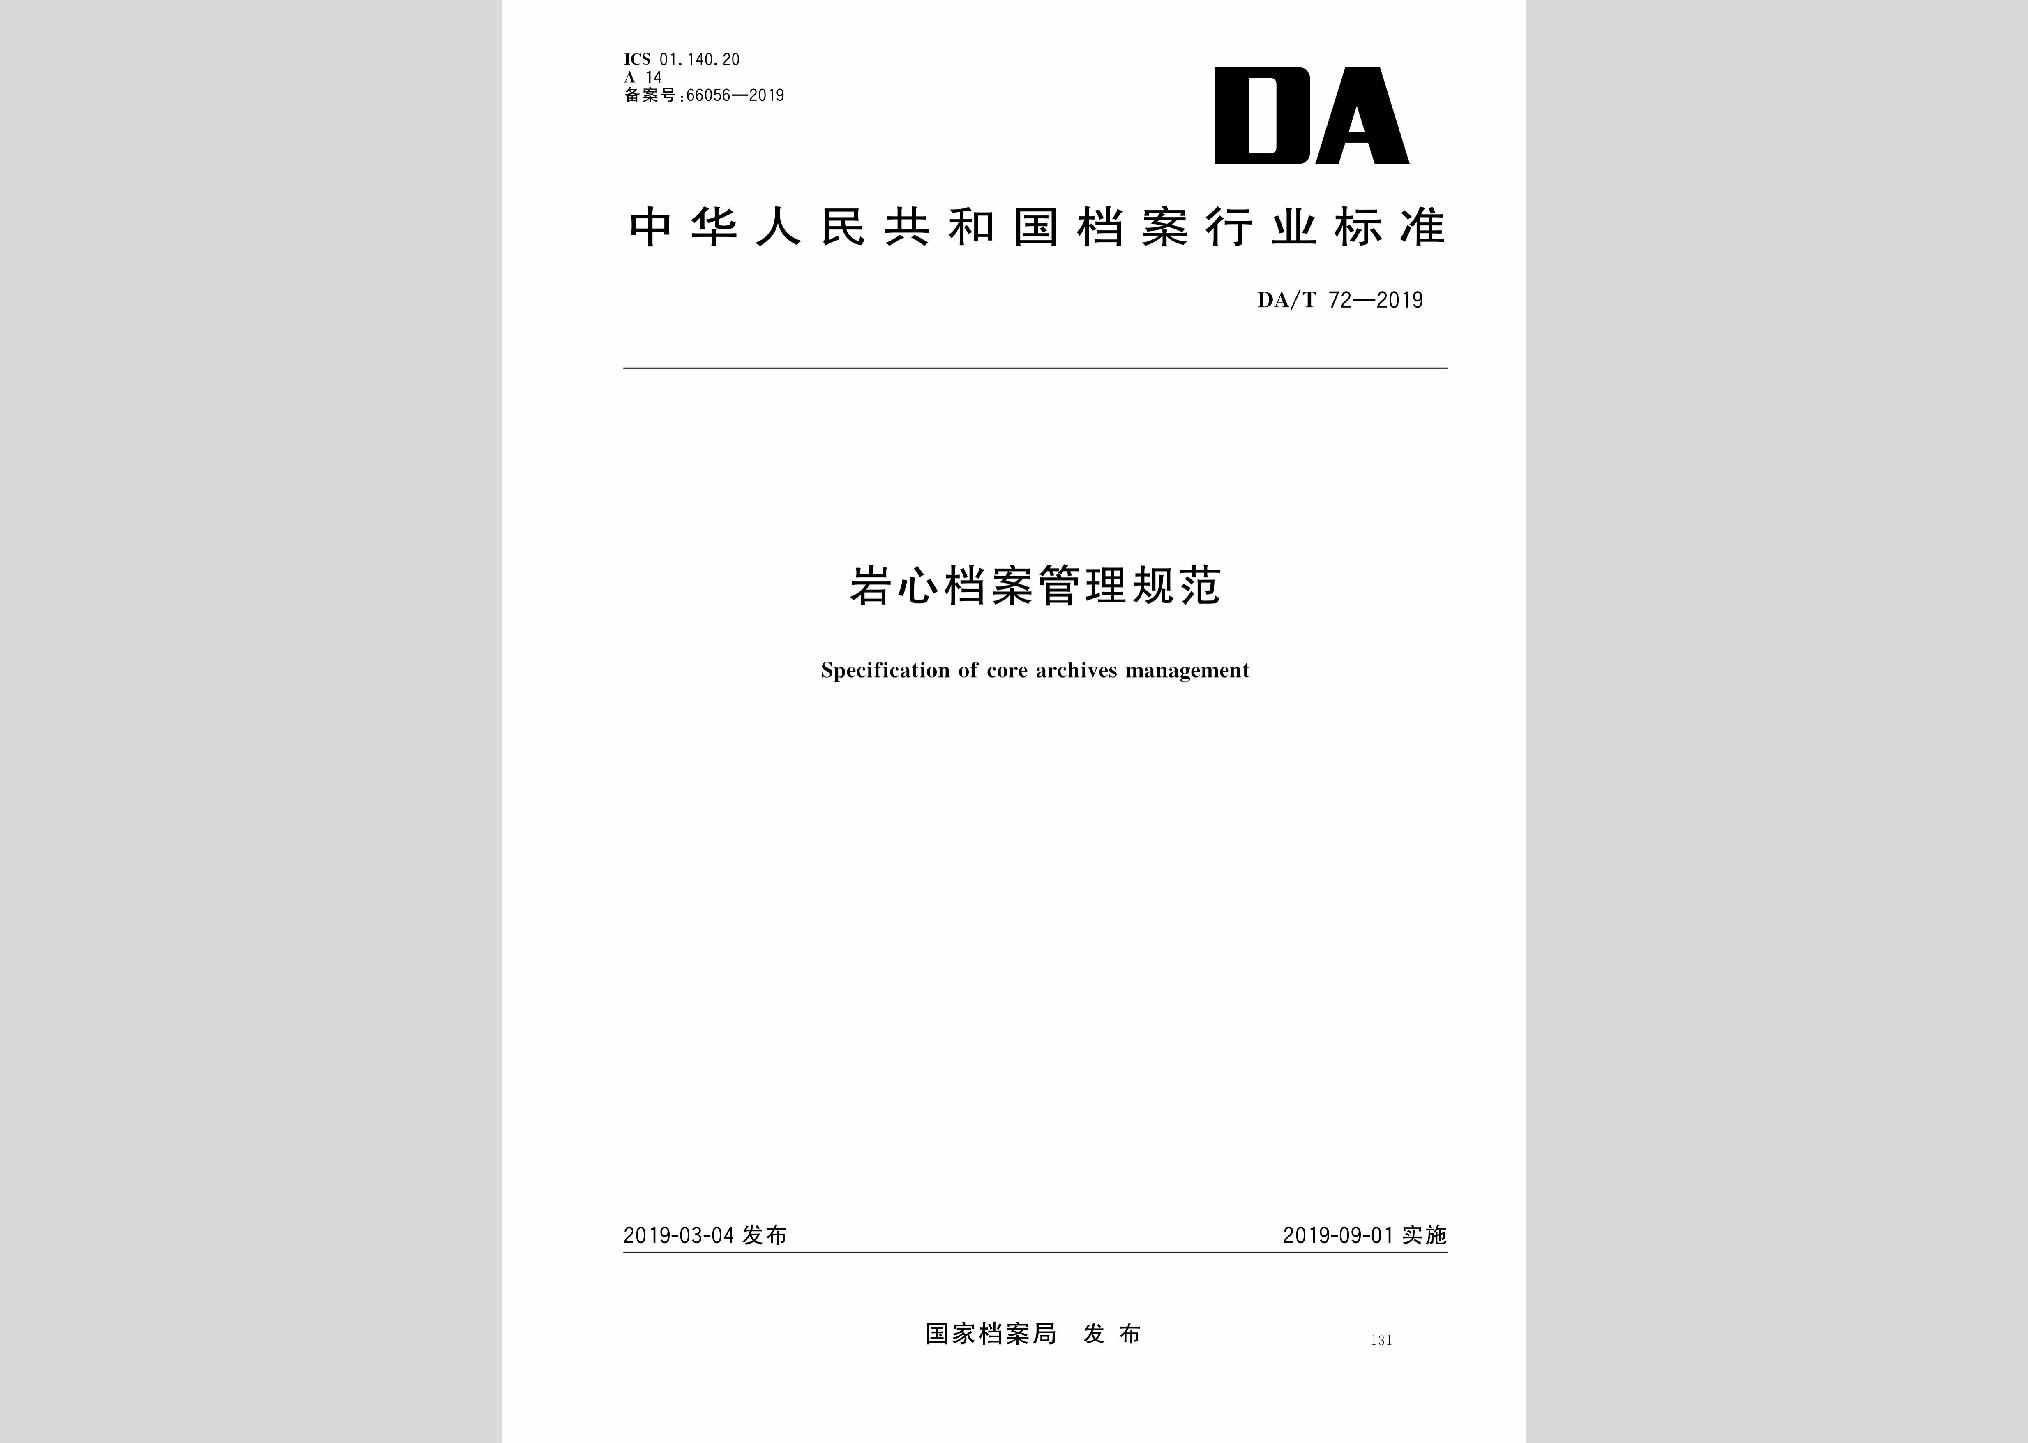 DA/T72-2019：岩心档案管理规范